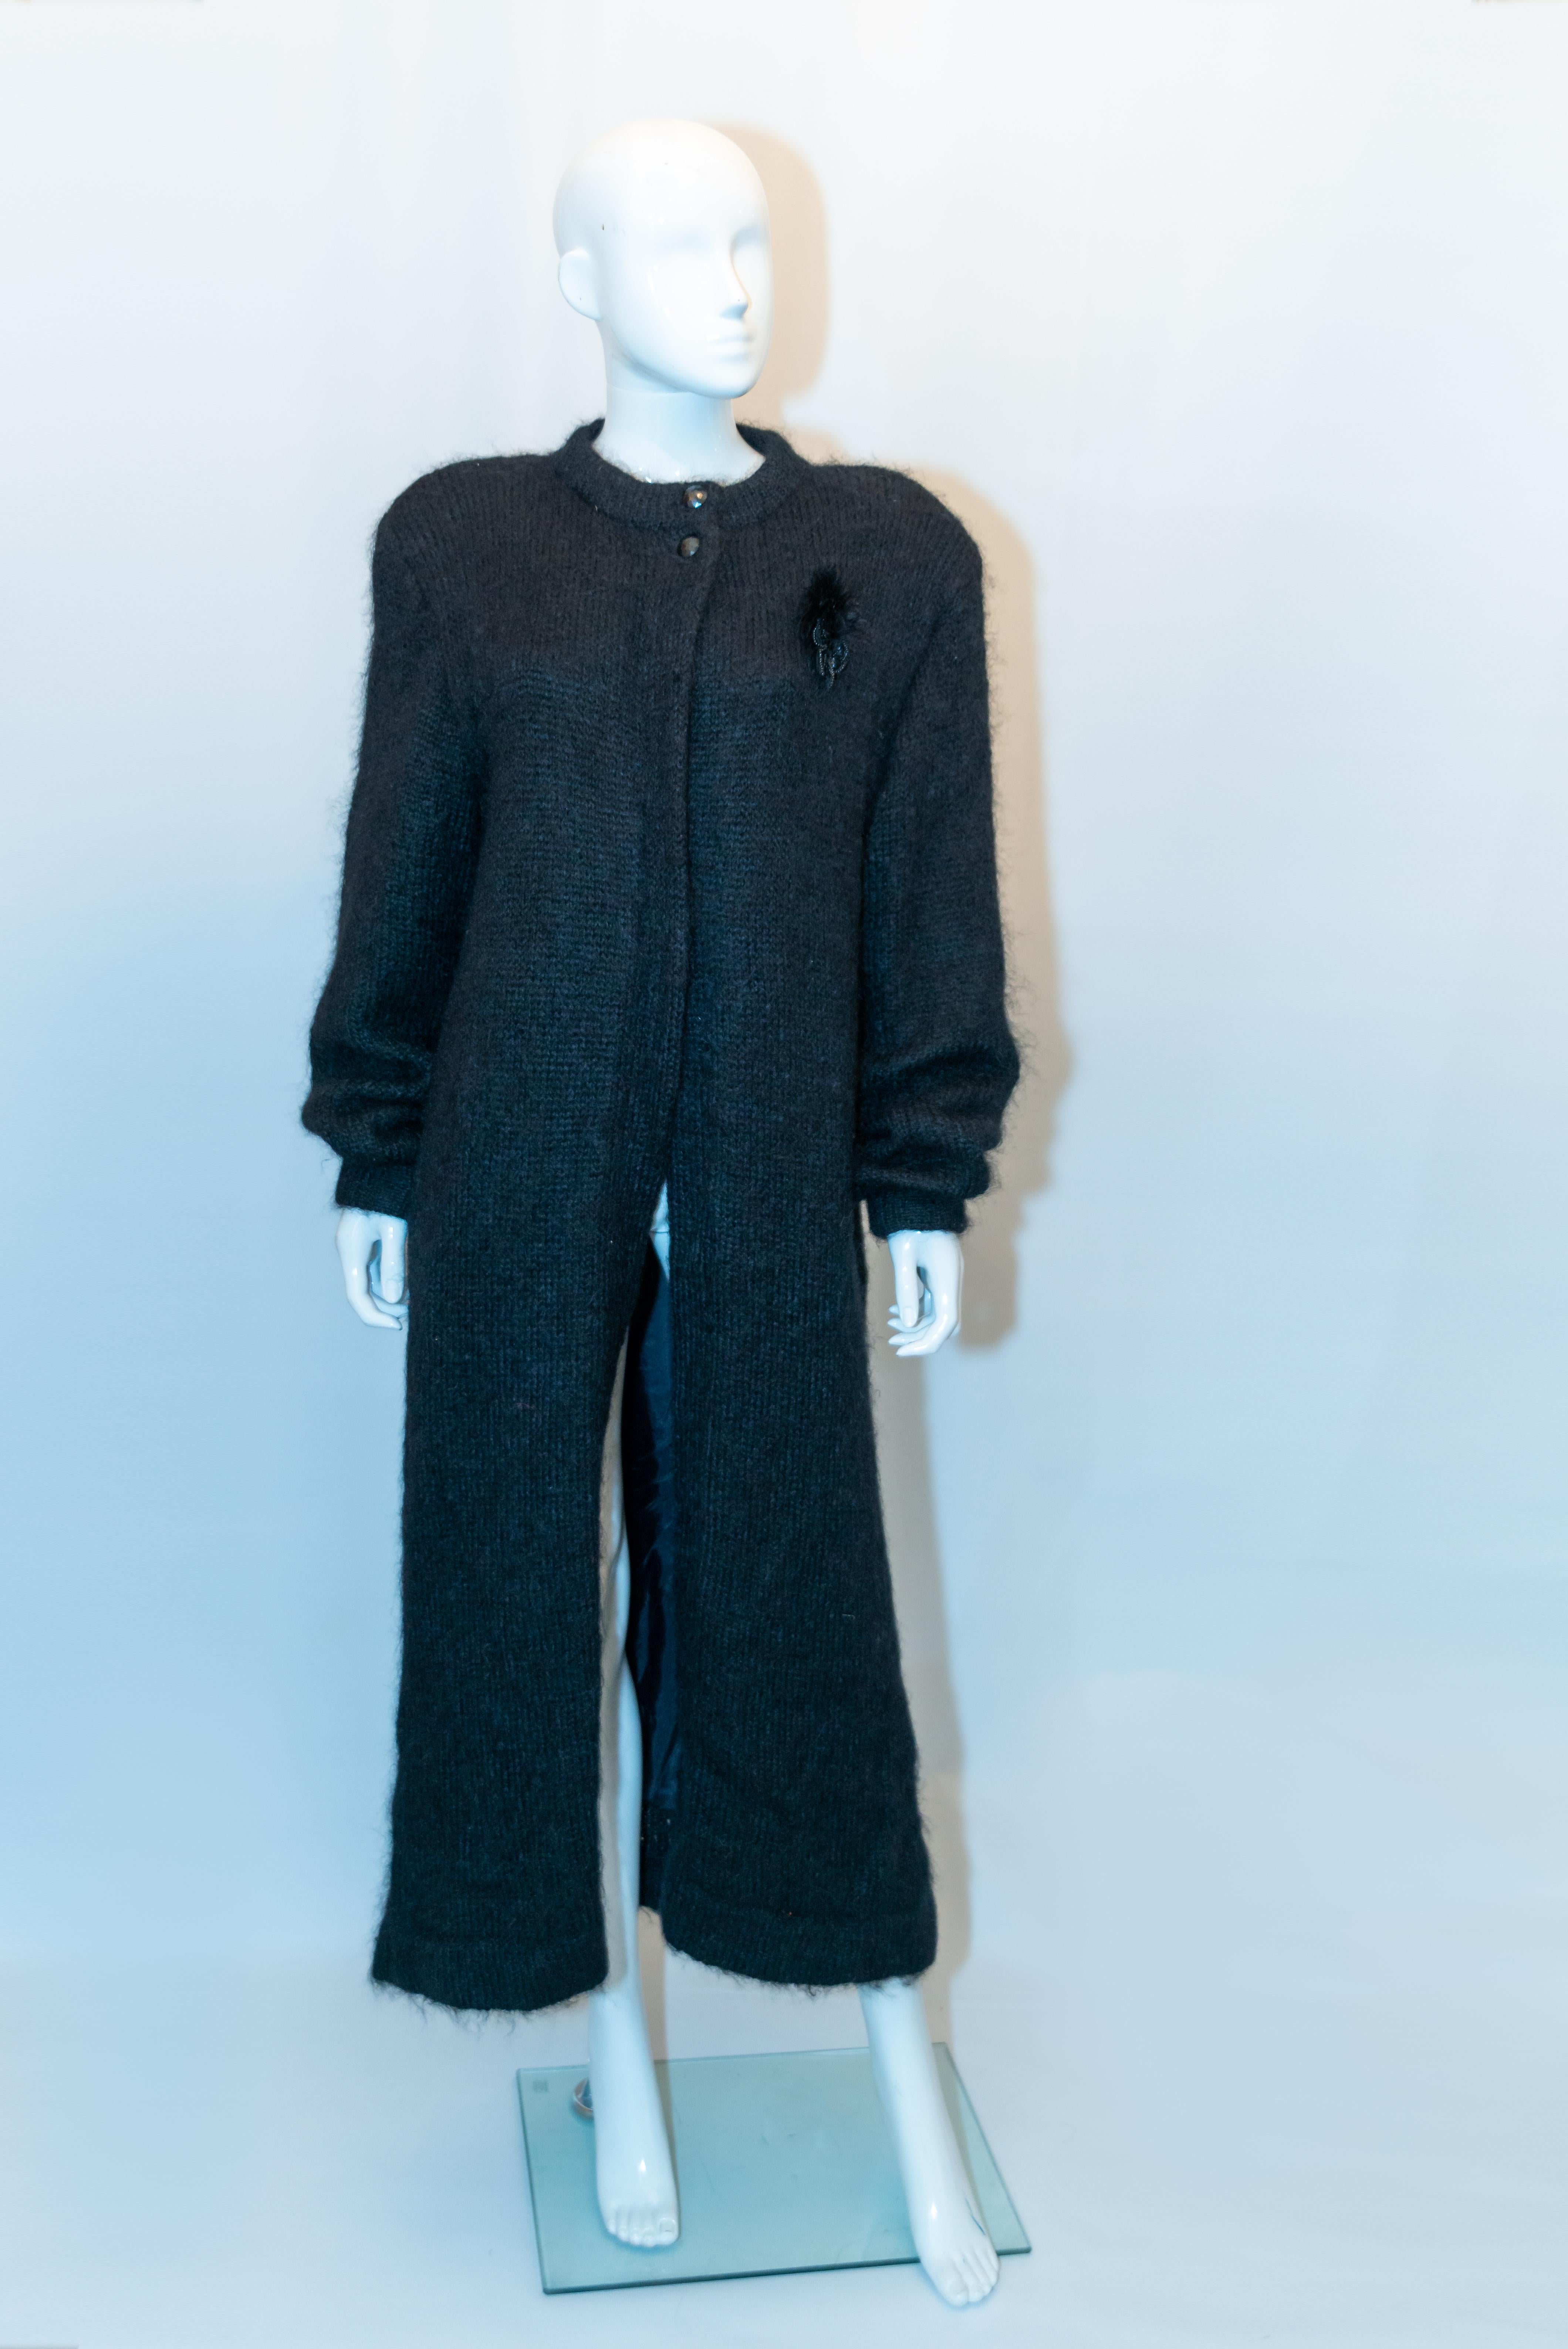 Ein wunderschöner Vintage-Mohair-Mantel für drinnen und draußen. Der Mantel ist lang und vollständig gefüttert  mit kleinen Schulterpolstern (können abgenommen werden) und einer Tasche auf jeder Seite. 
Maße: Büste bis zu 40'', Länge 54''
